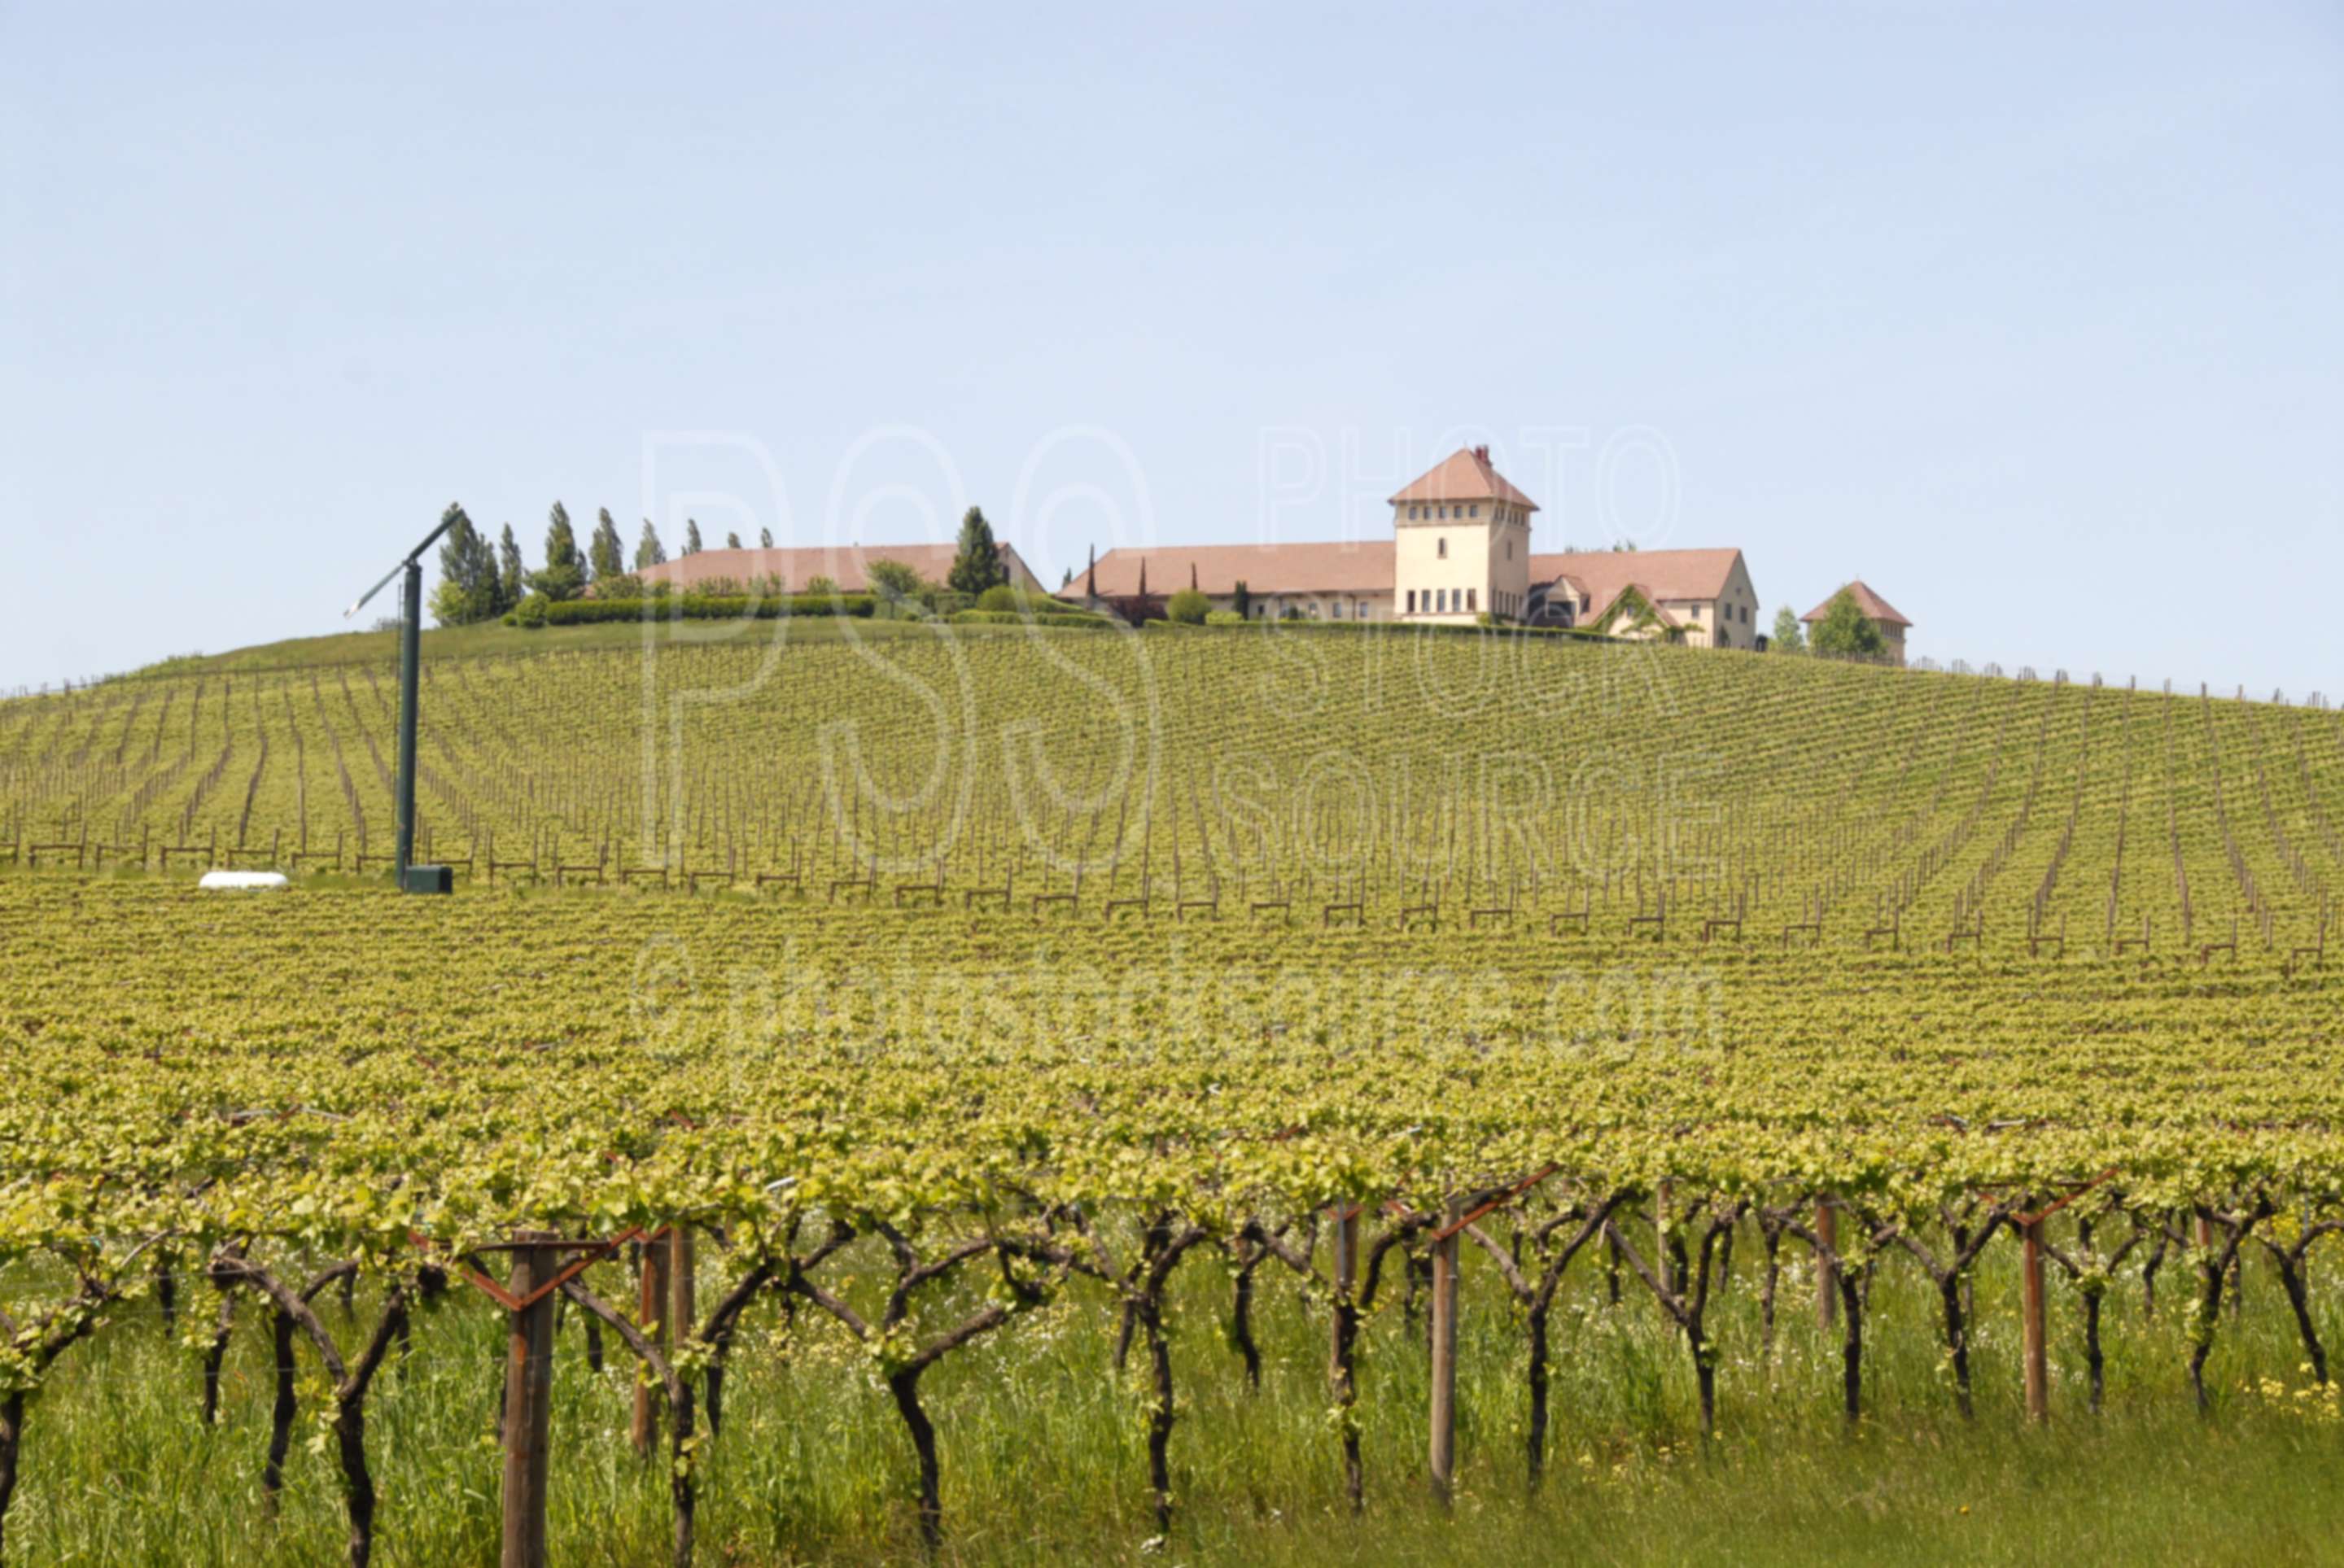 King Estate Winery,vines,vineyard,vineyards,wine,agriculture